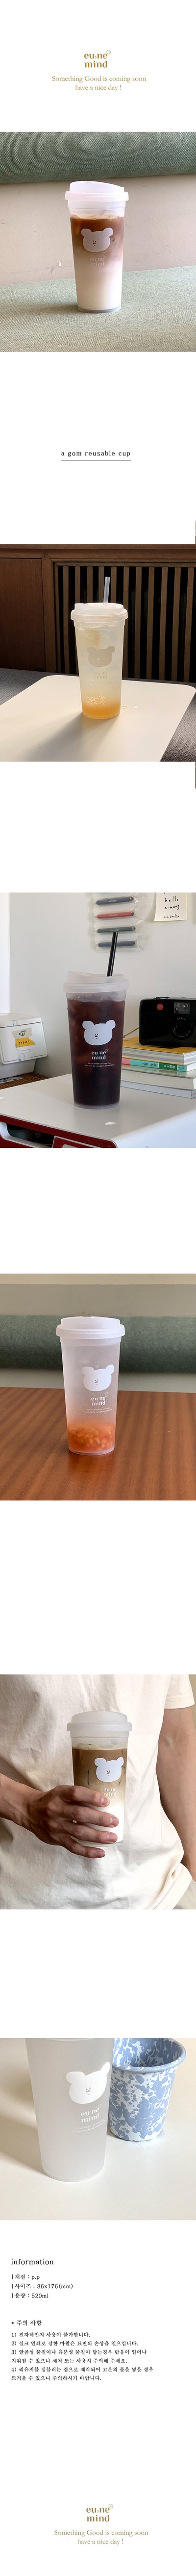 agom reusable cup